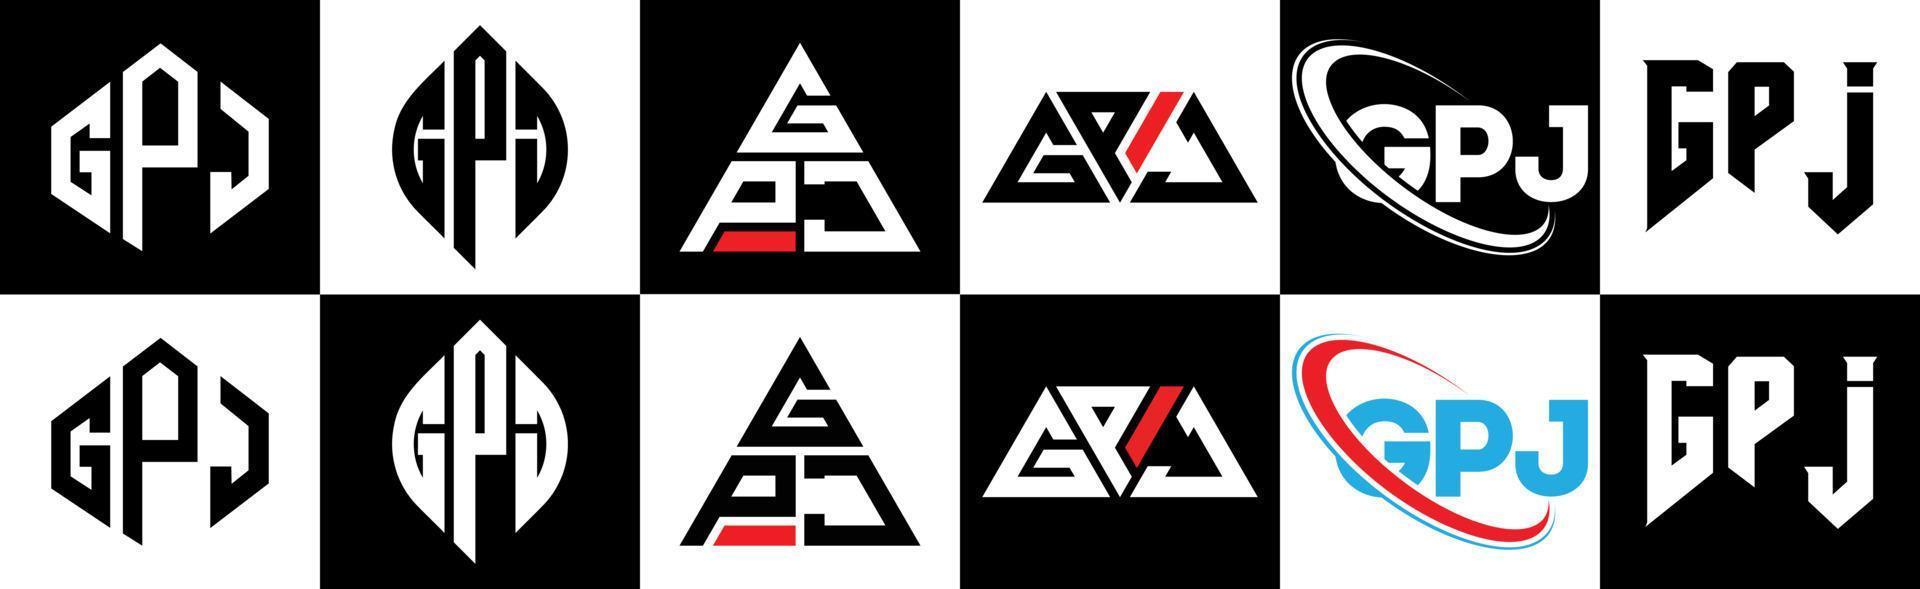 gpj-Buchstaben-Logo-Design in sechs Stilen. gpj polygon, kreis, dreieck, sechseck, flacher und einfacher stil mit schwarz-weißem buchstabenlogo in einer zeichenfläche. gpj minimalistisches und klassisches Logo vektor